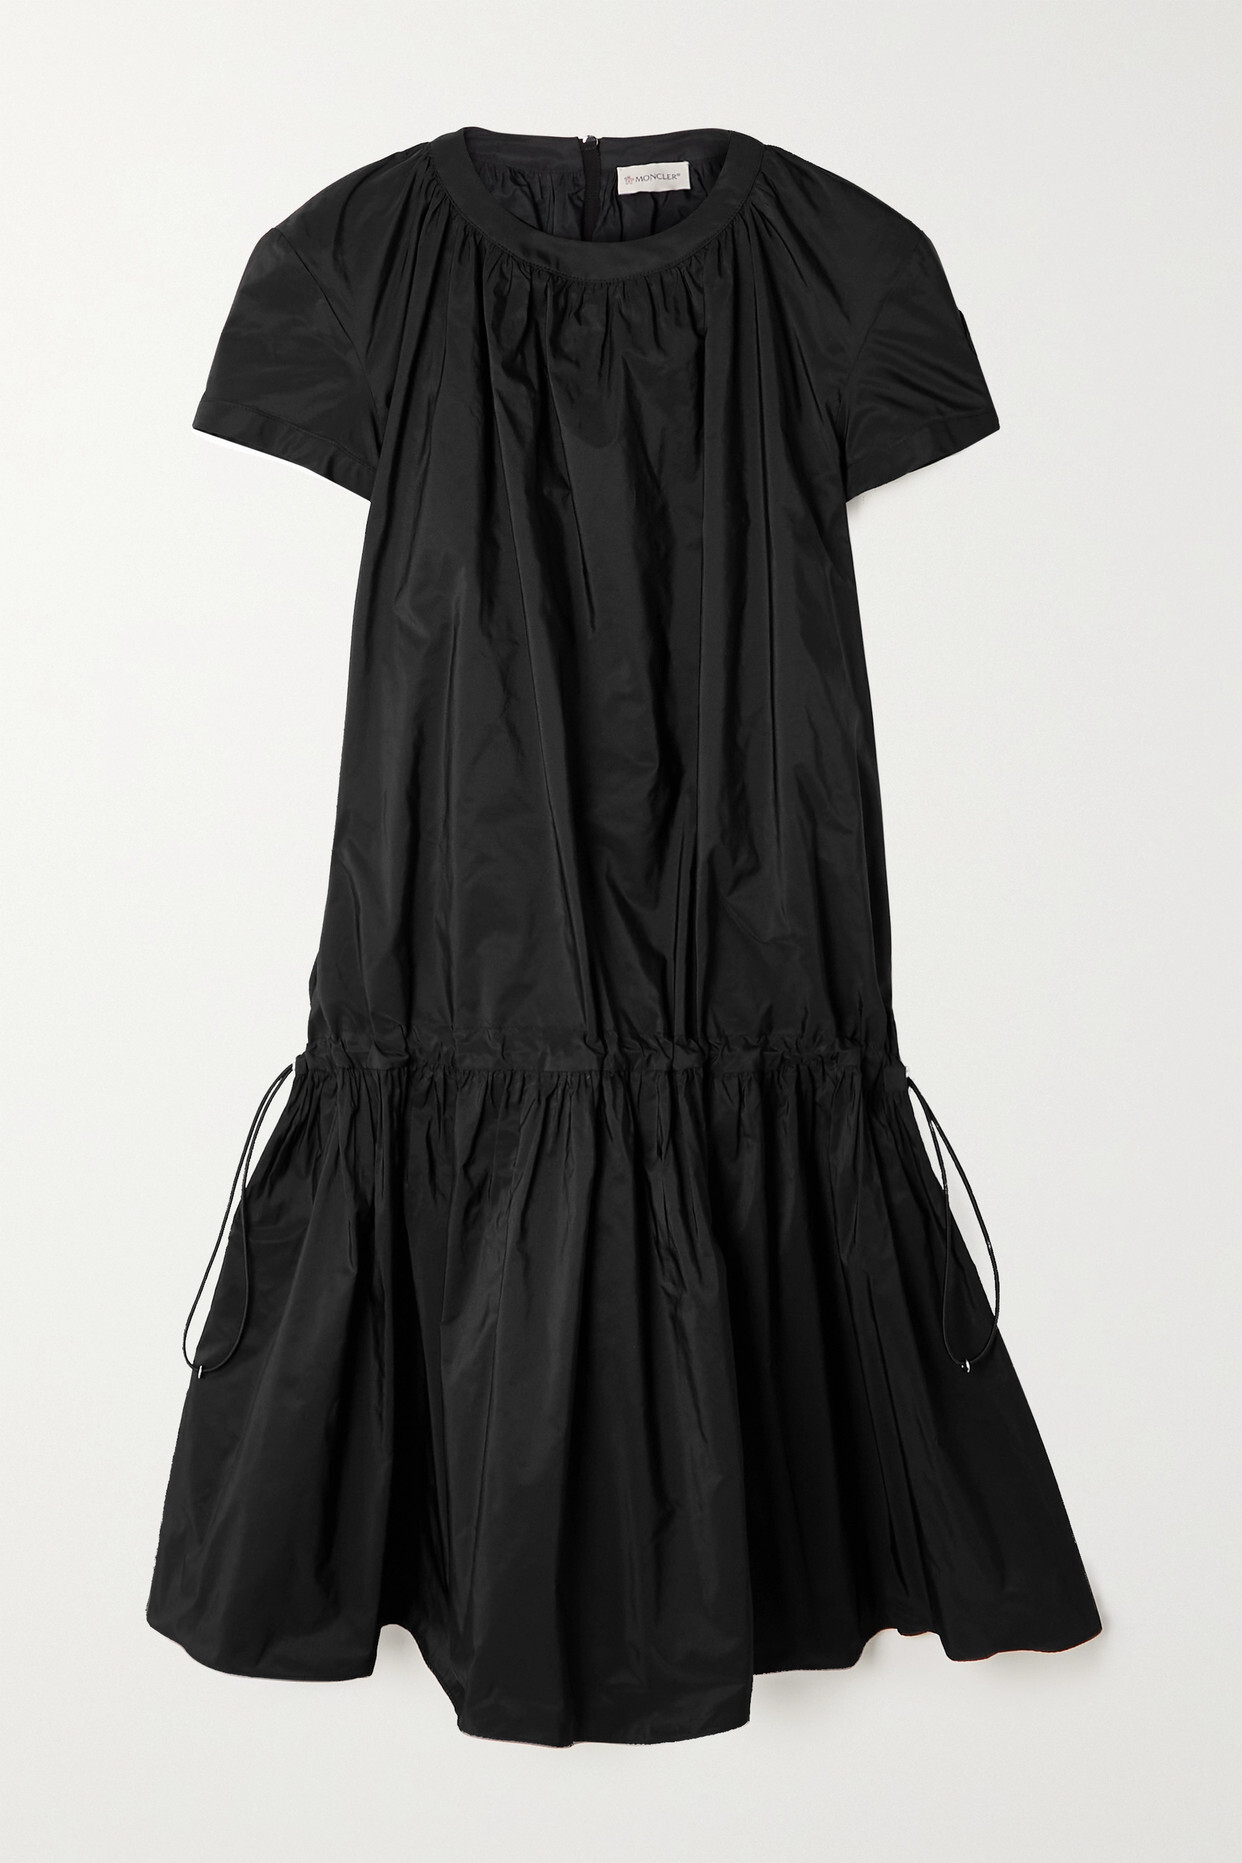 Moncler - Pleated Taffeta Mini Dress - Black